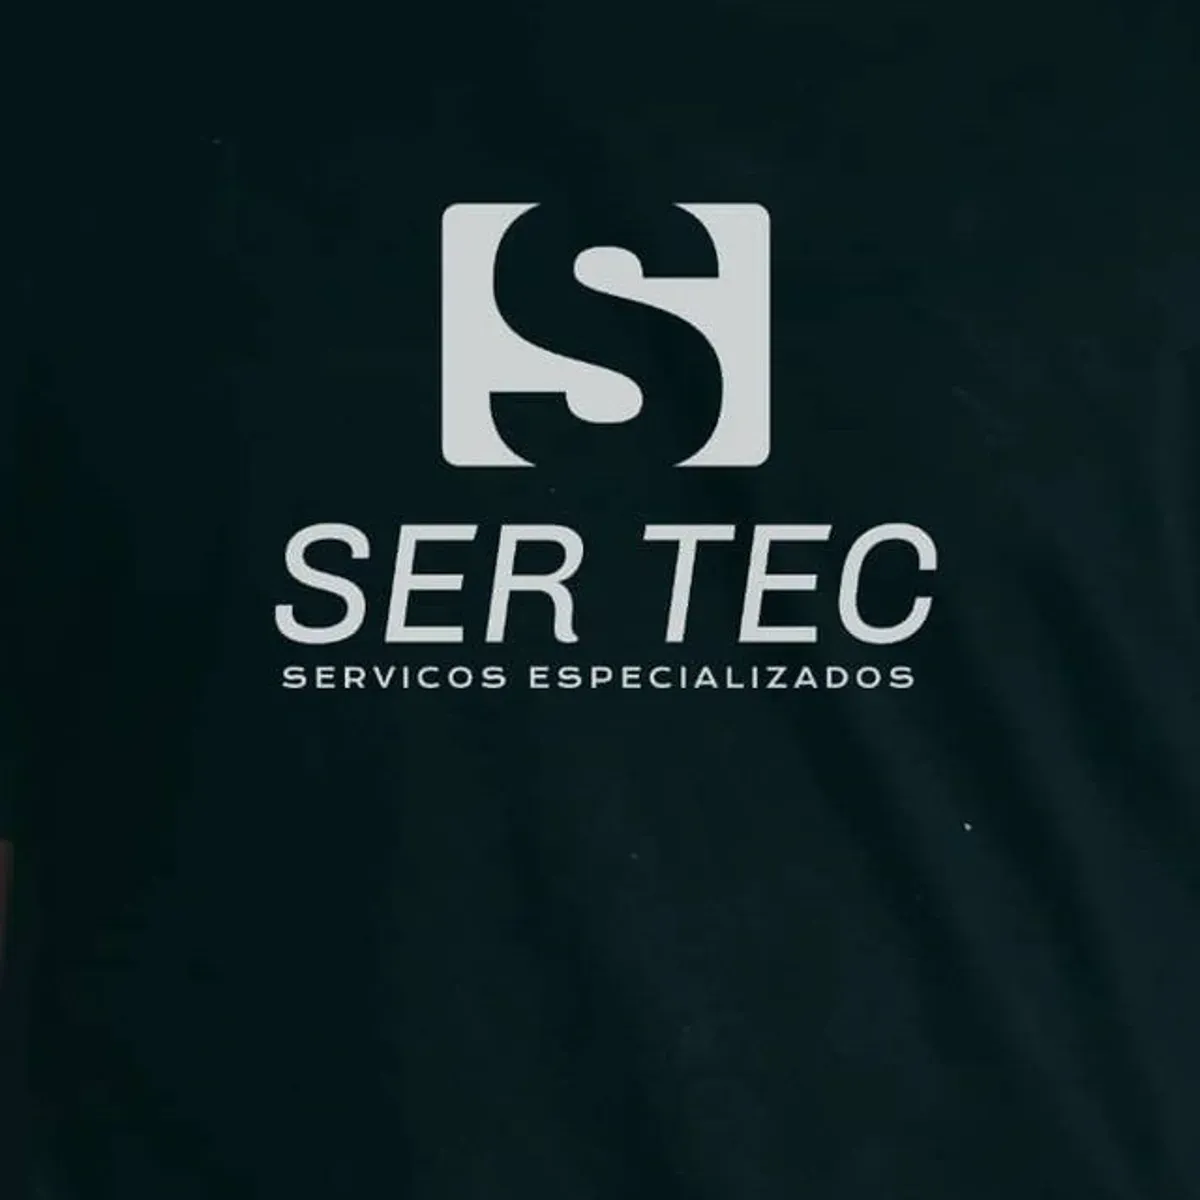 SERTEC